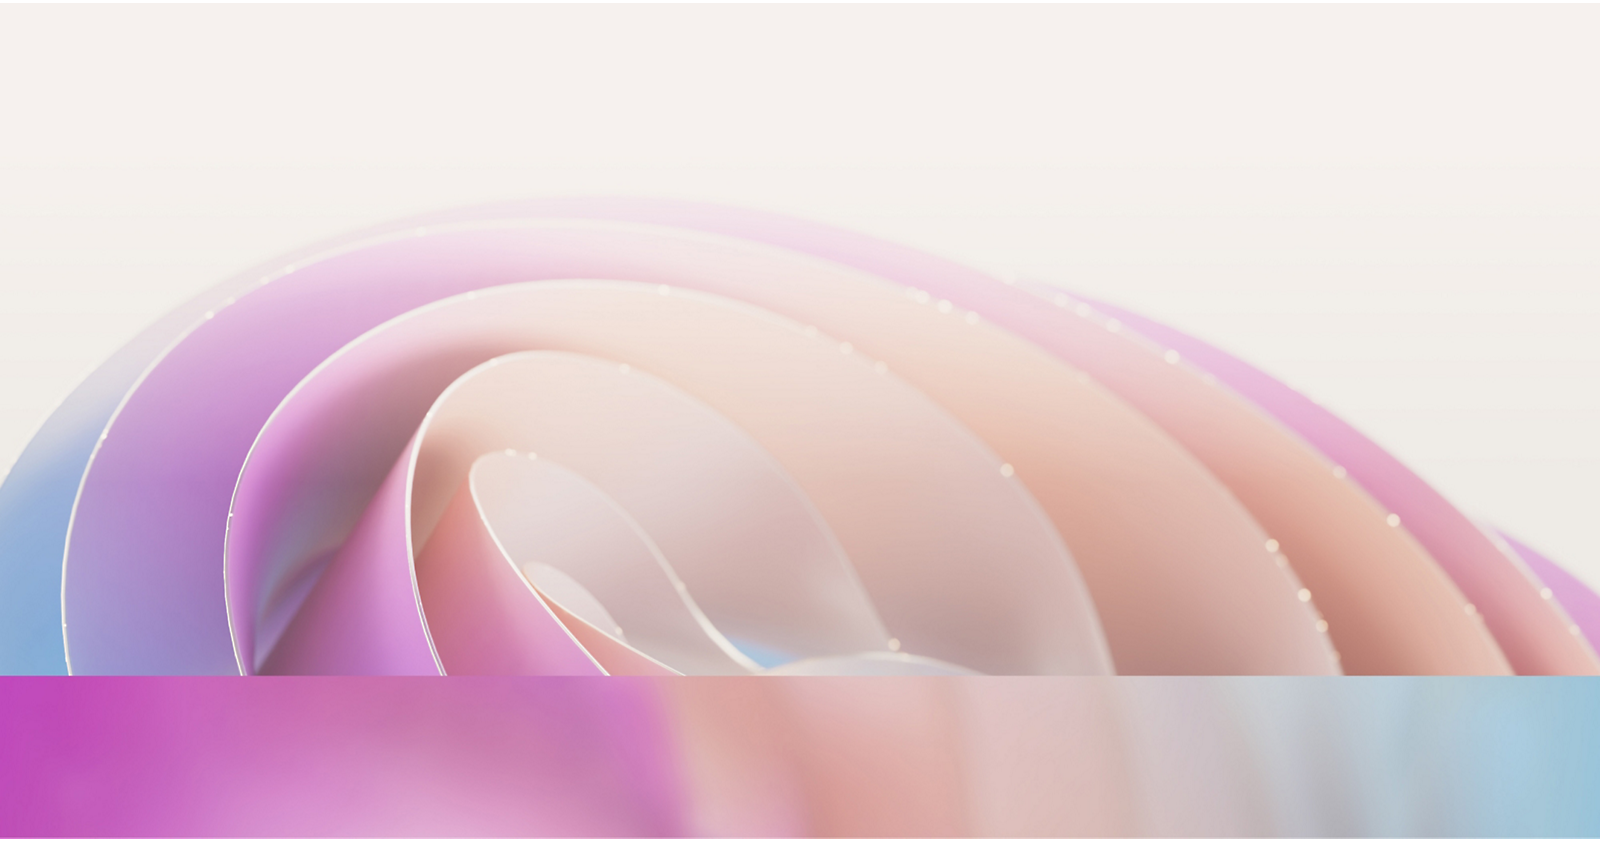 Abstrakcyjny obraz przedstawiający miękkie, nakładające się kolorowe krzywe w pastelowych odcieniach różu, purpury i błękitu 